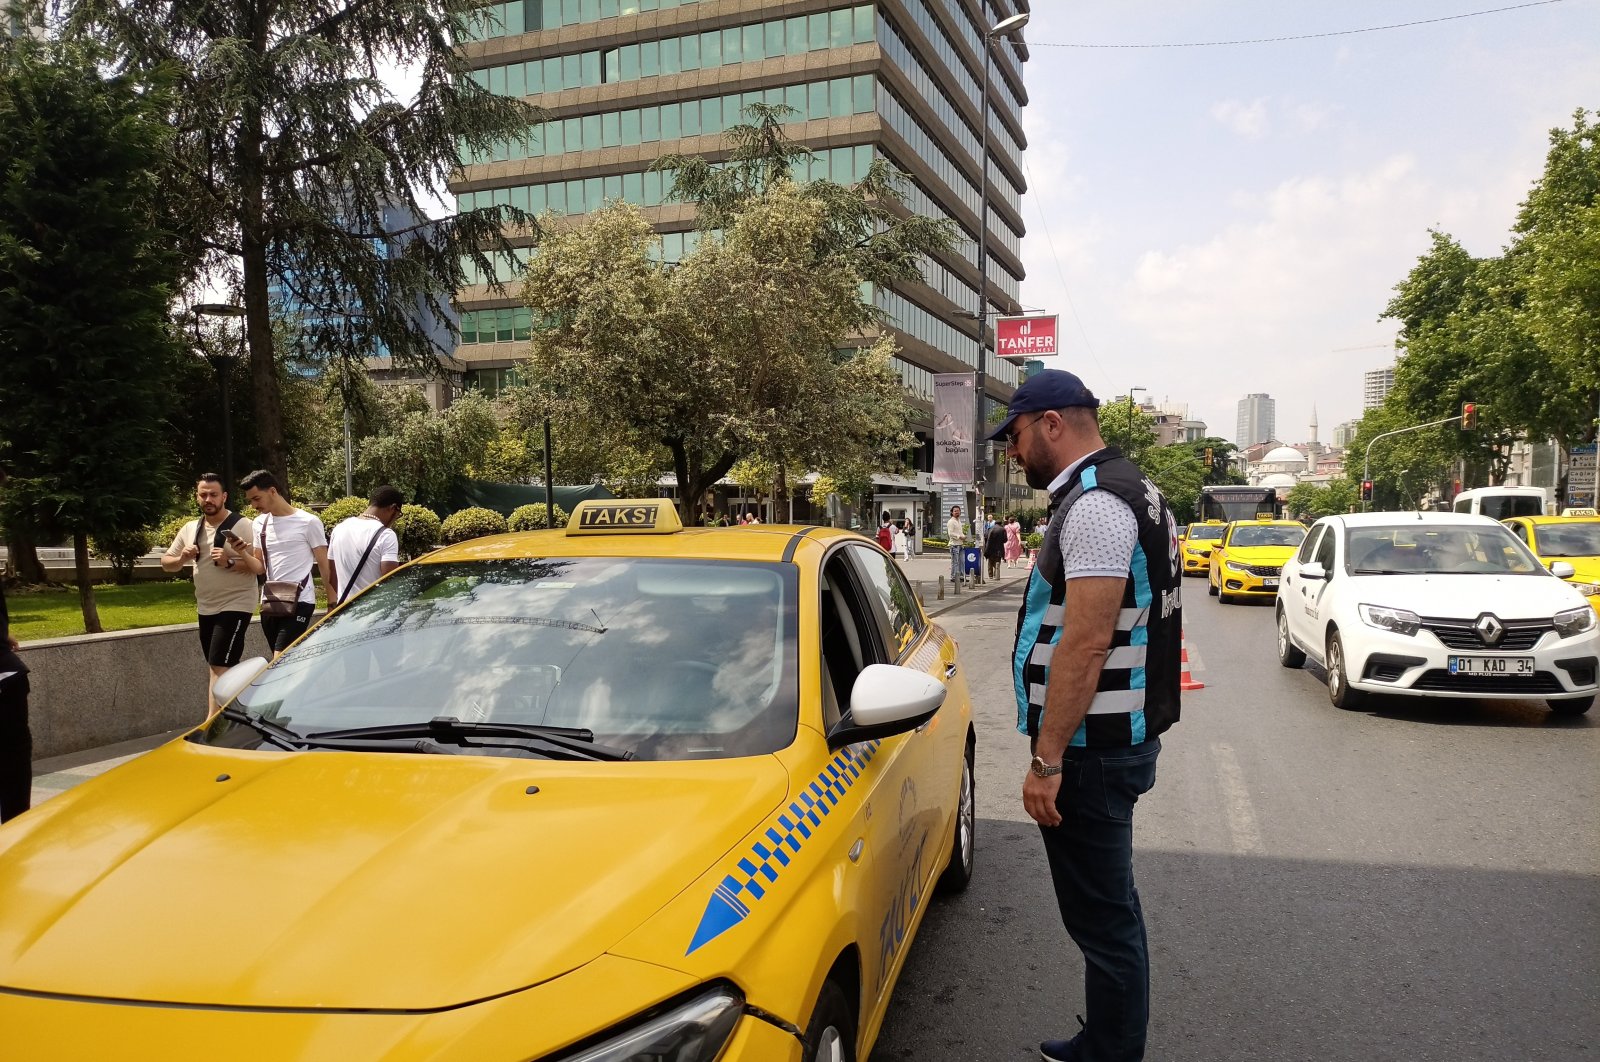 Survei menunjukkan orang Istanbul tidak senang dengan layanan taksi